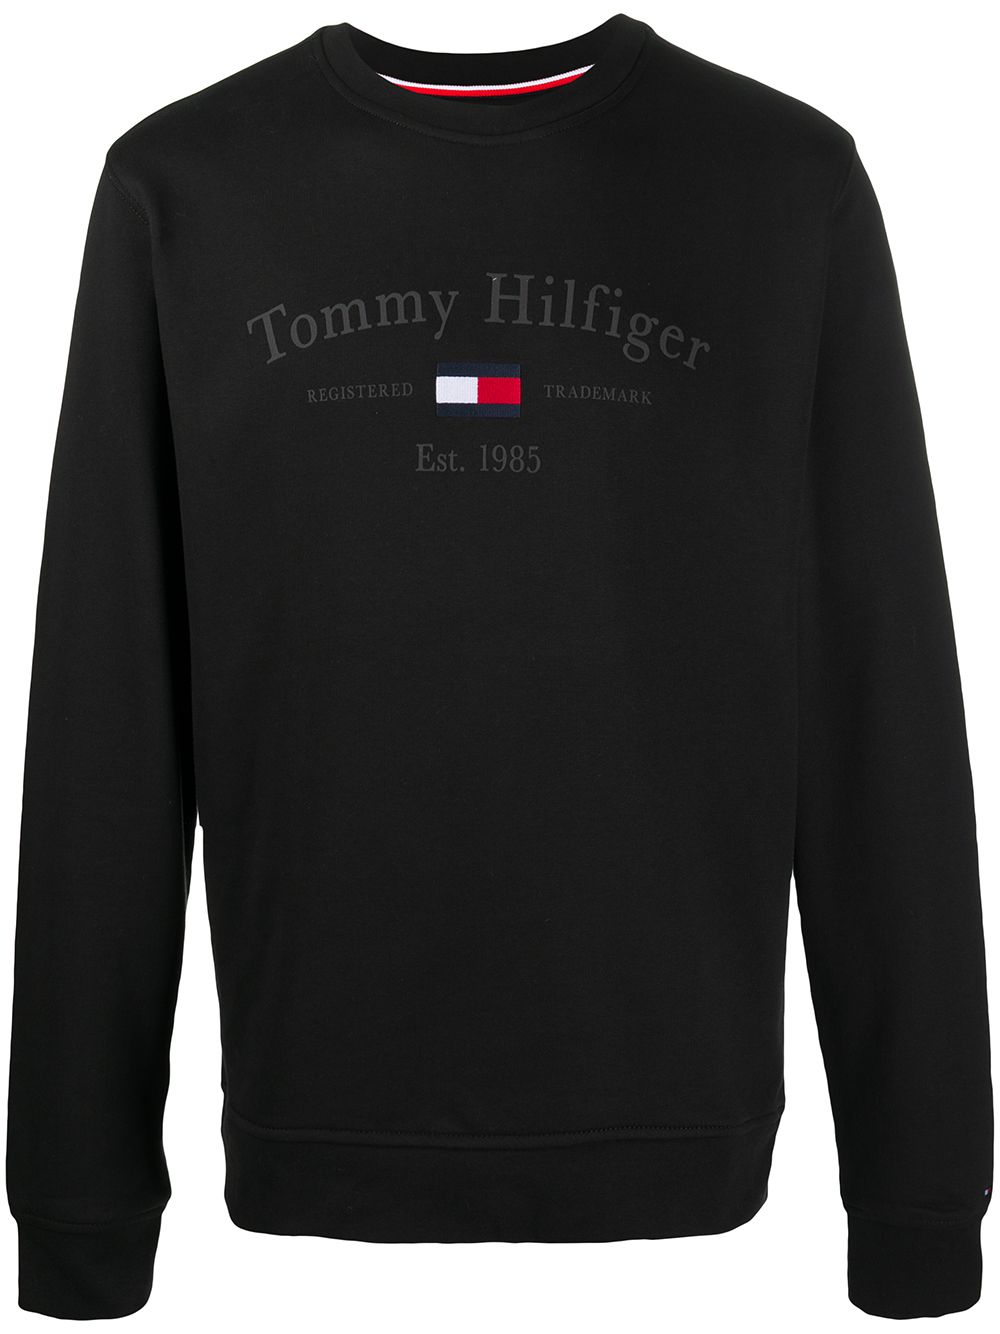 фото Tommy hilfiger толстовка с вышитым логотипом